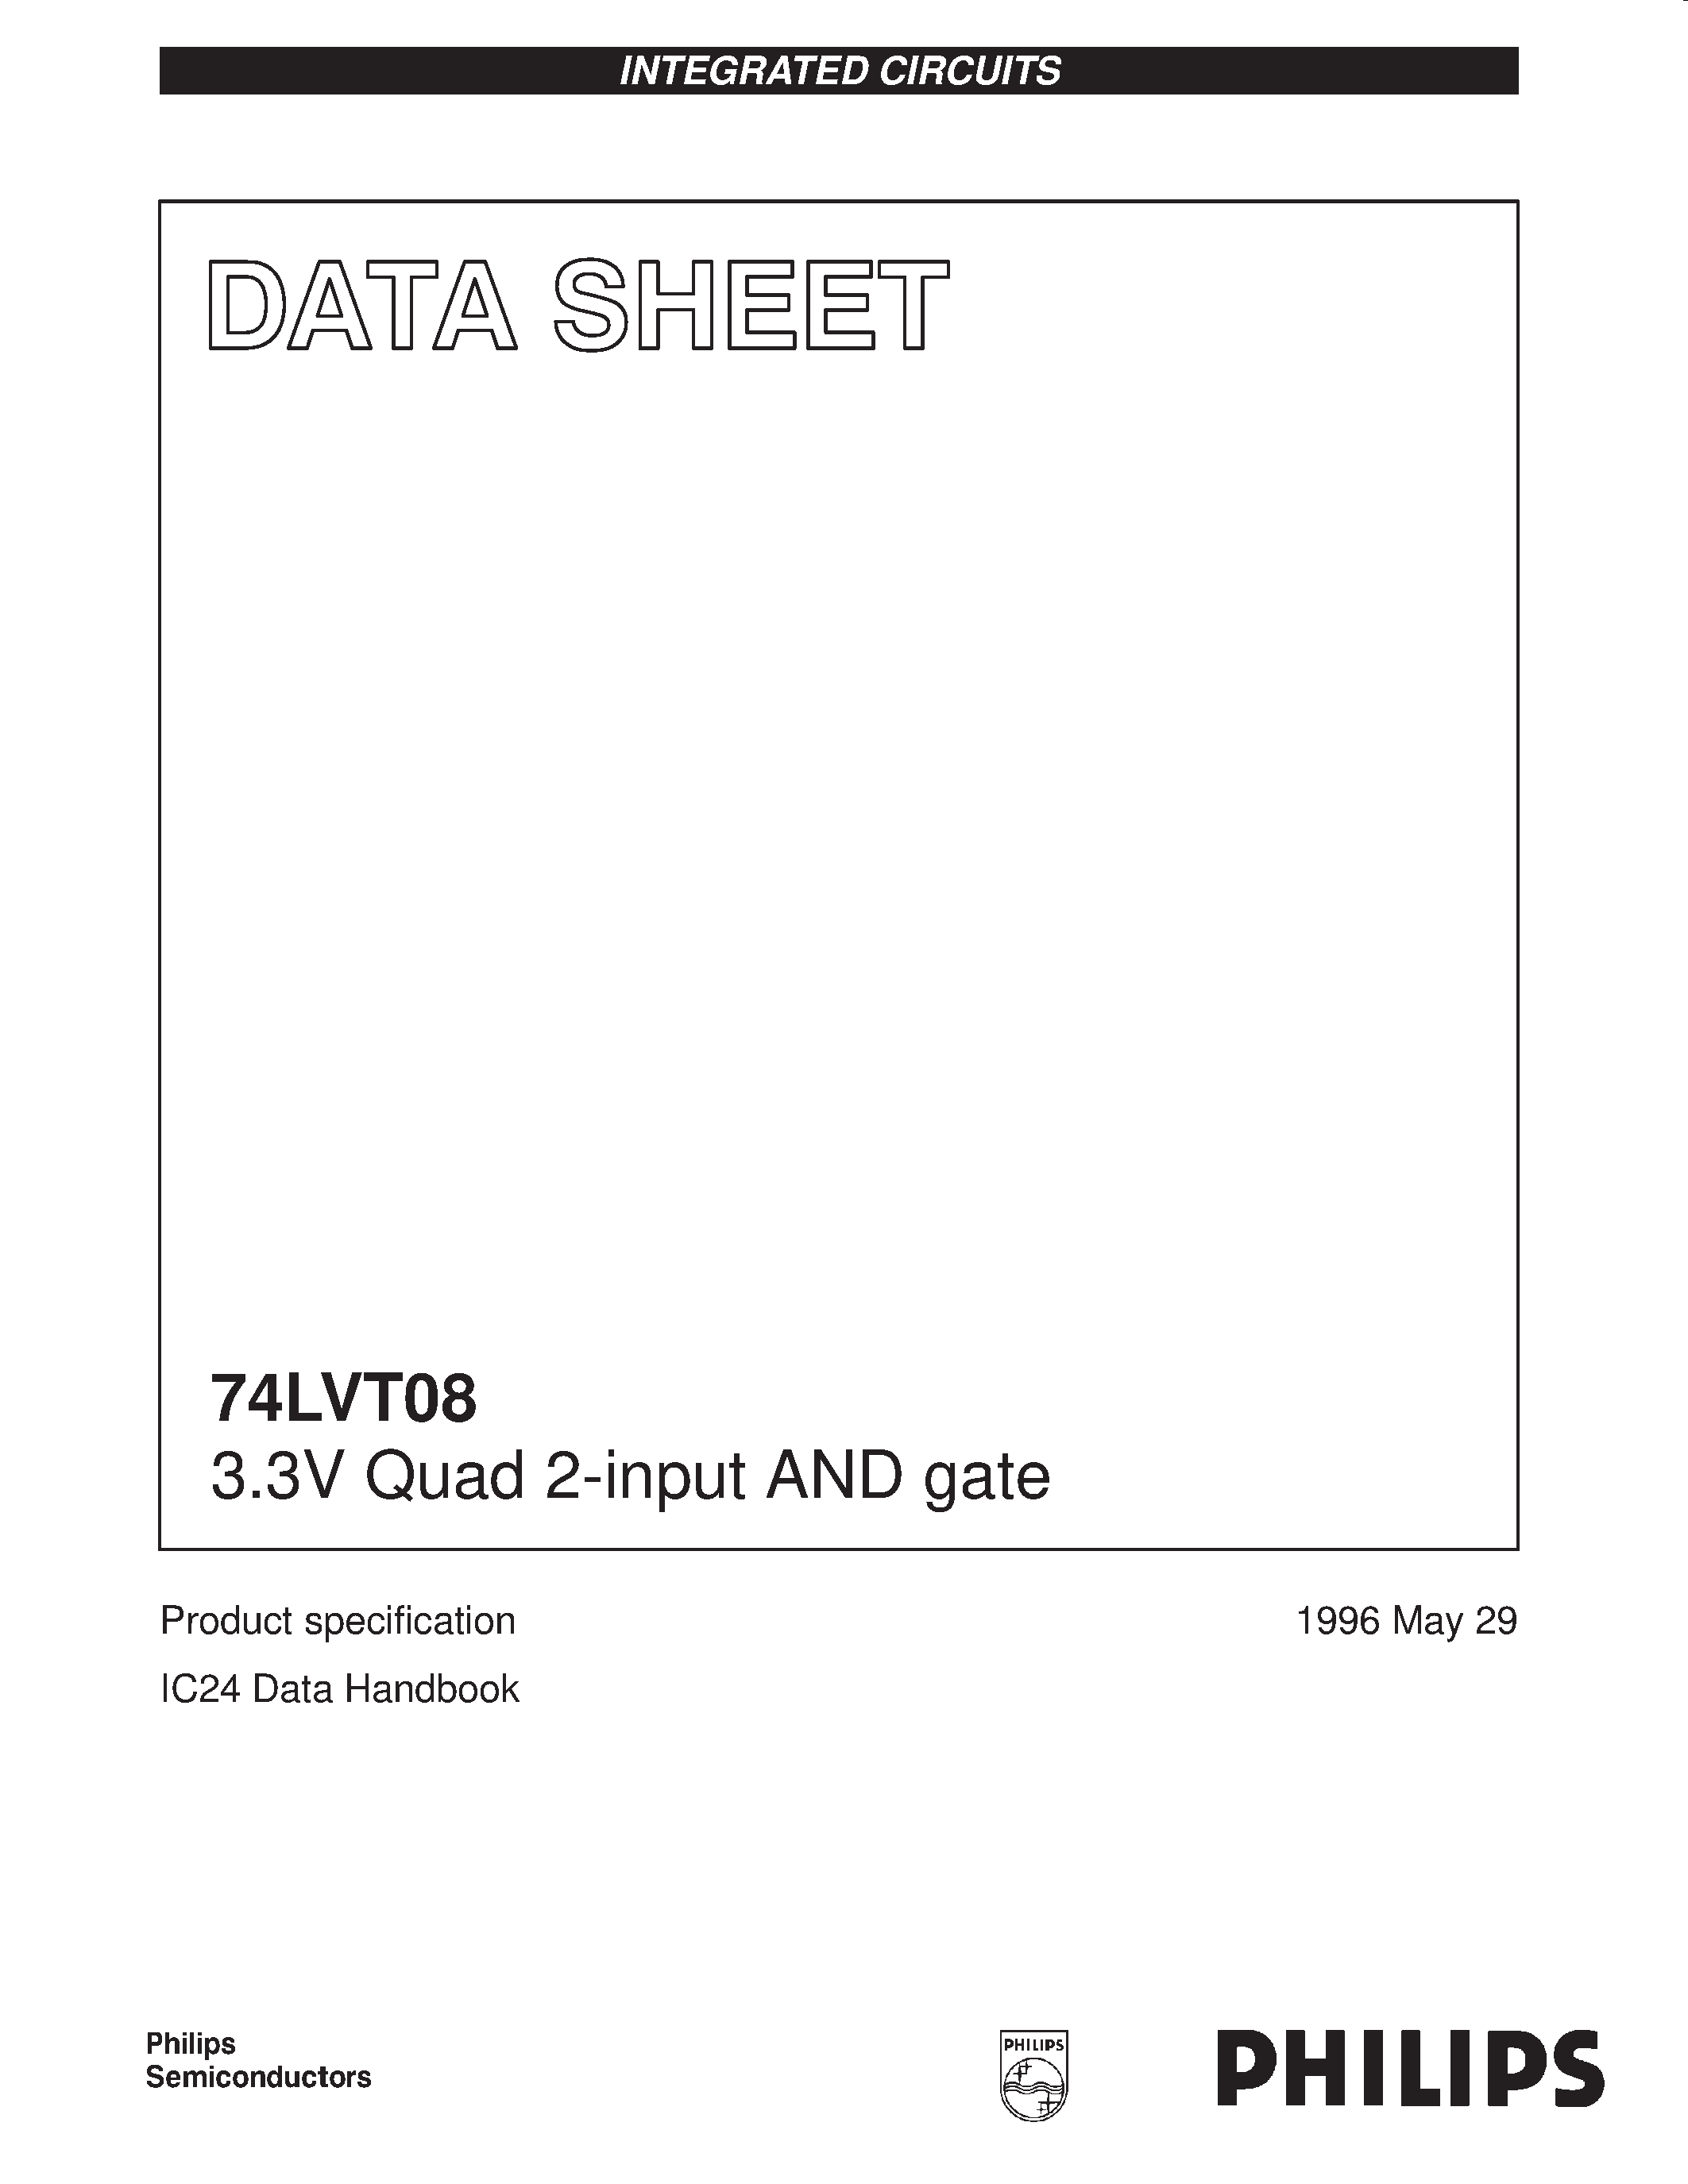 Даташит 74LVT08 - 3.3V Quad 2-input AND gate страница 1